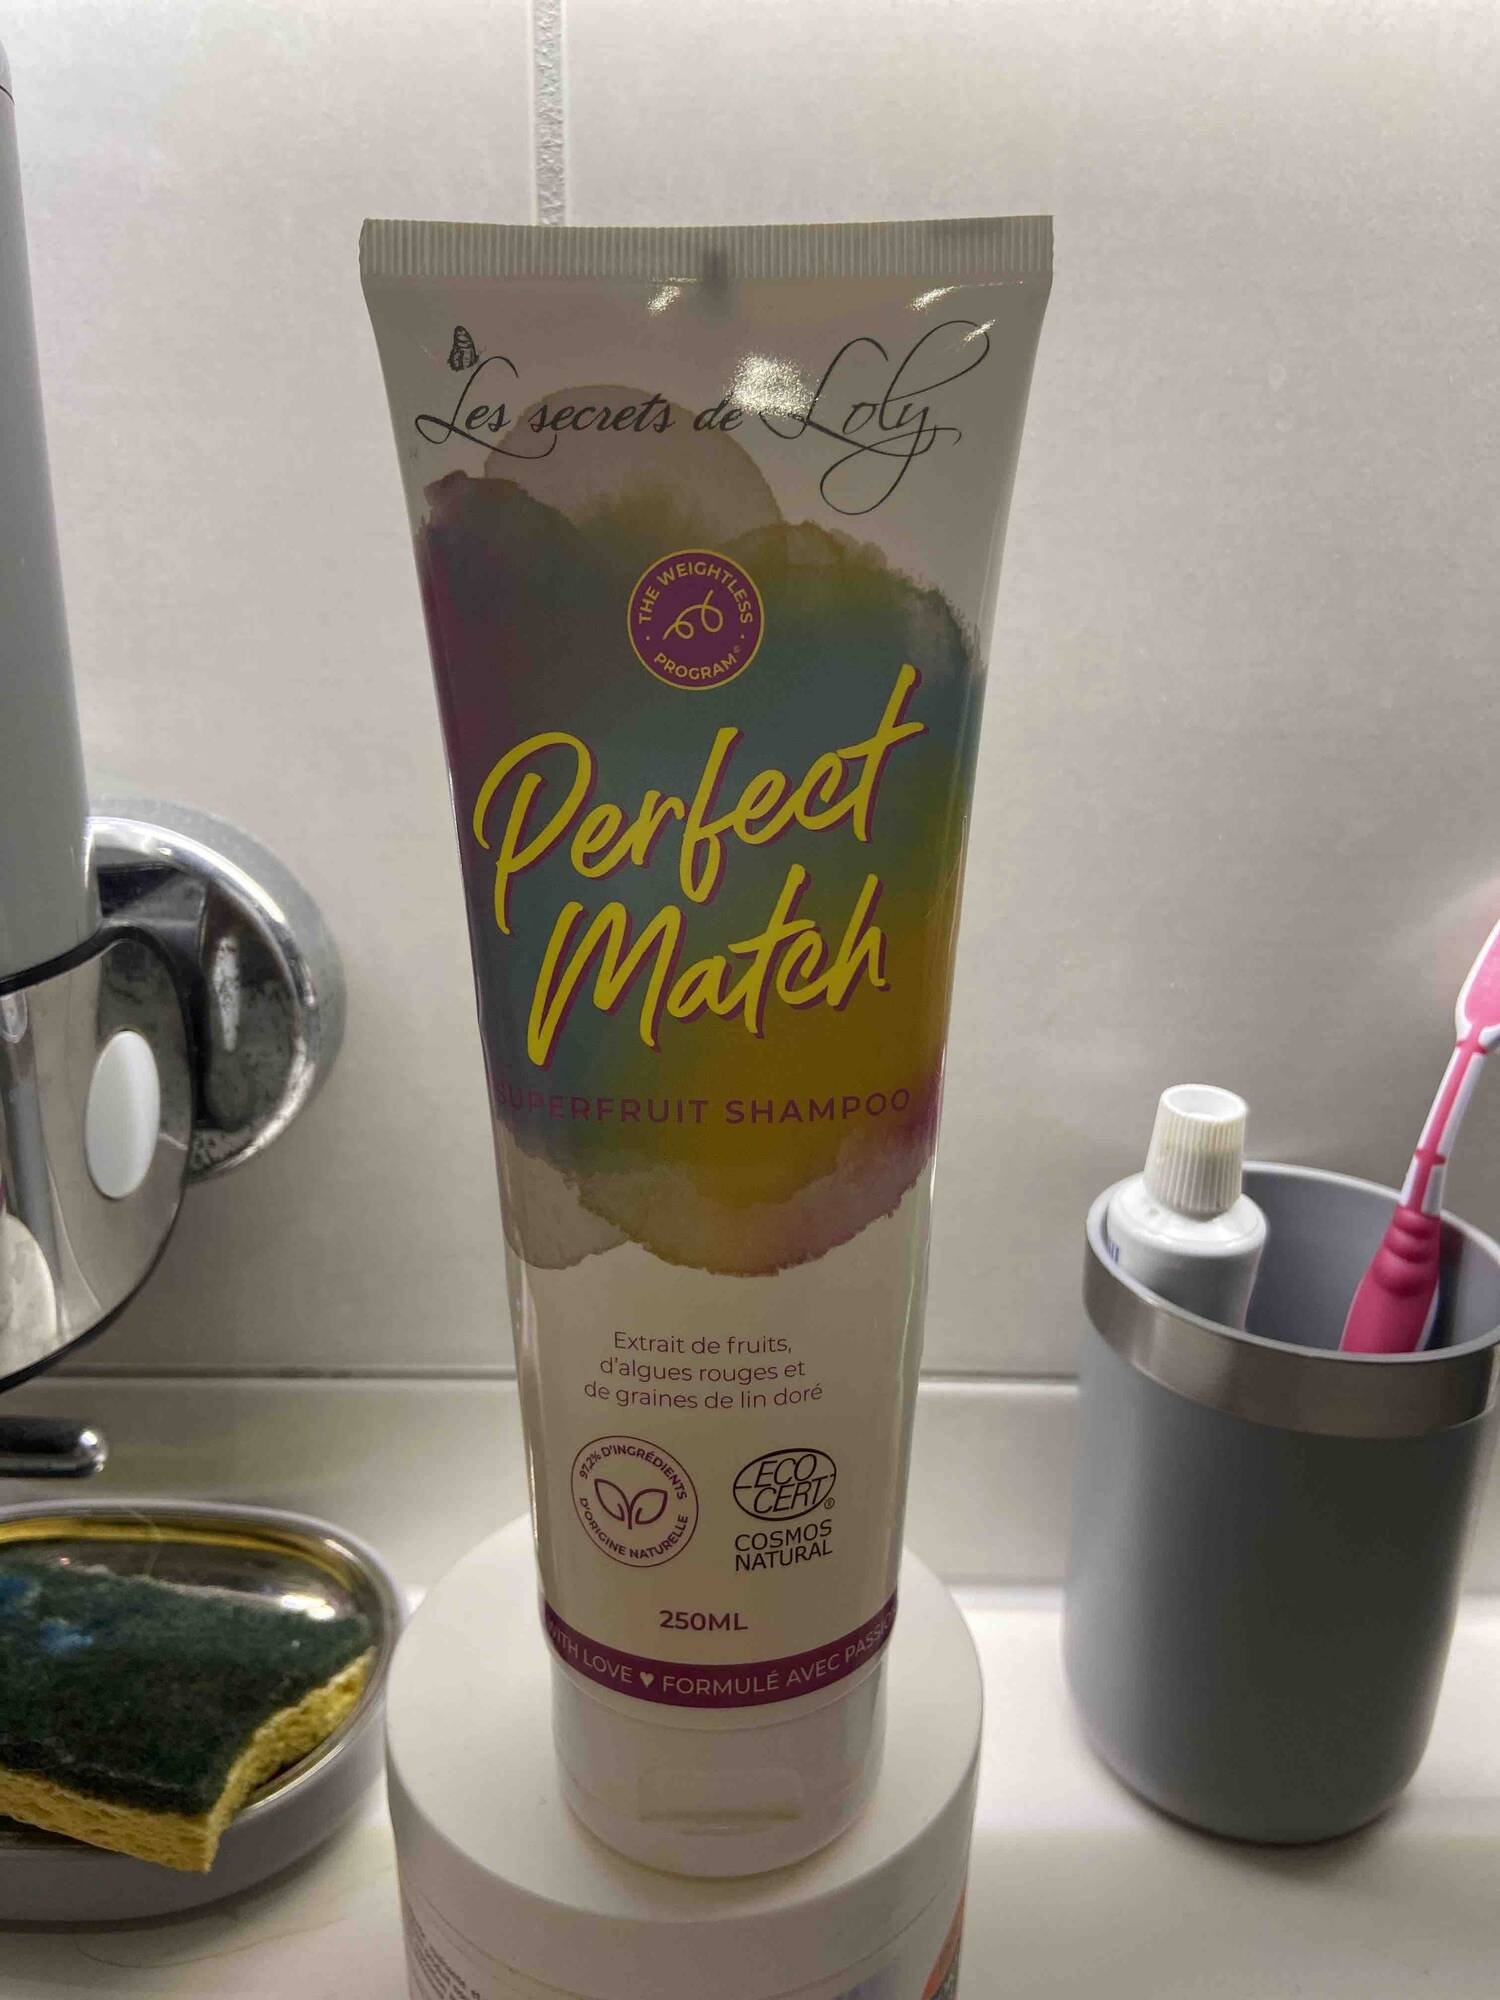 LES SECRETS DE LOLY - Perfect match - Superfruit shampoo